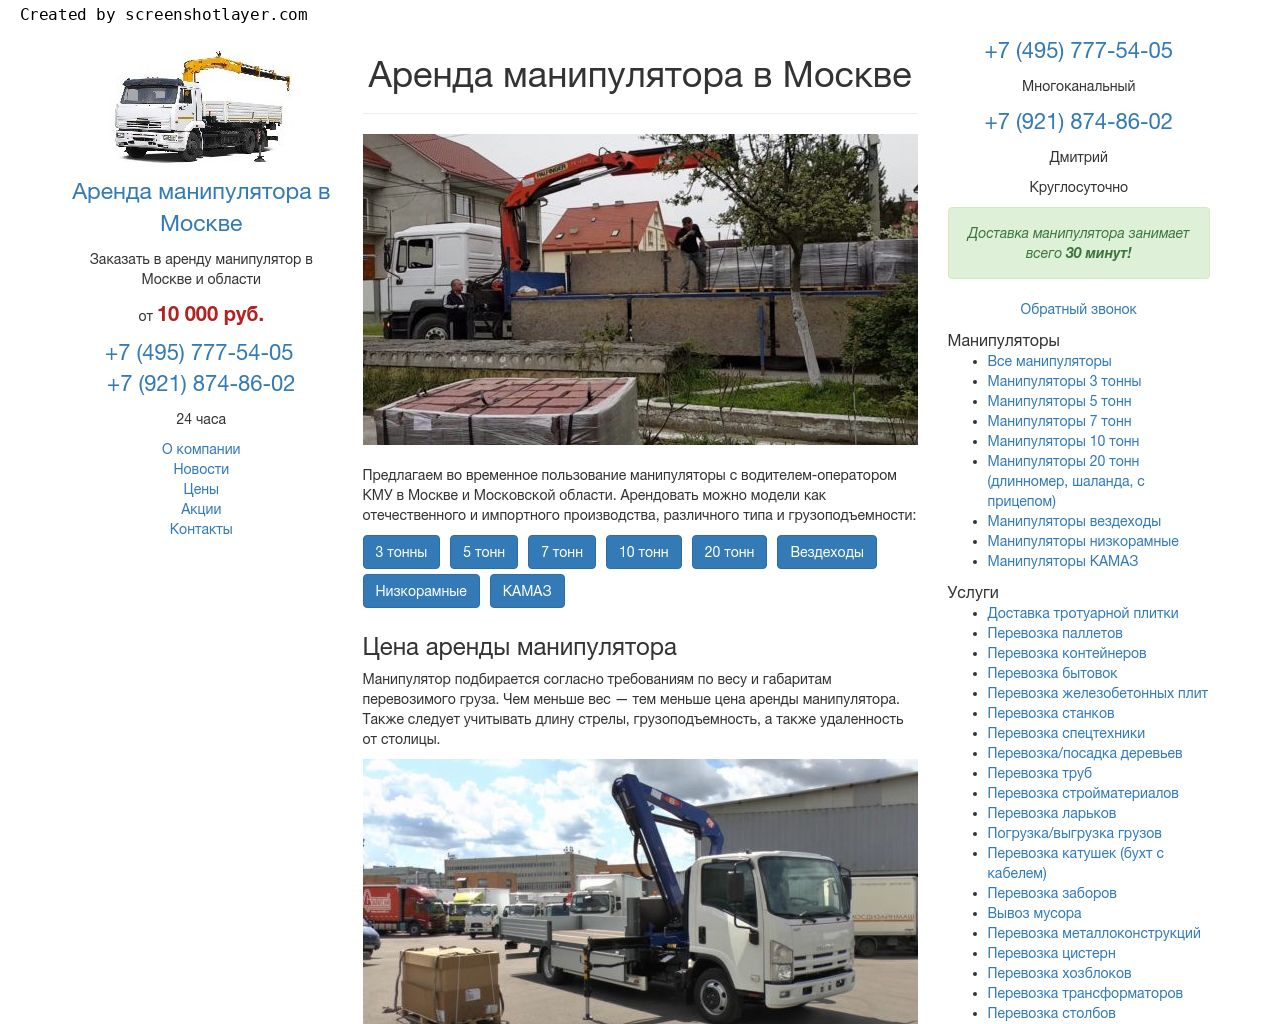 Изображение сайта manipulyatora-arenda.ru в разрешении 1280x1024